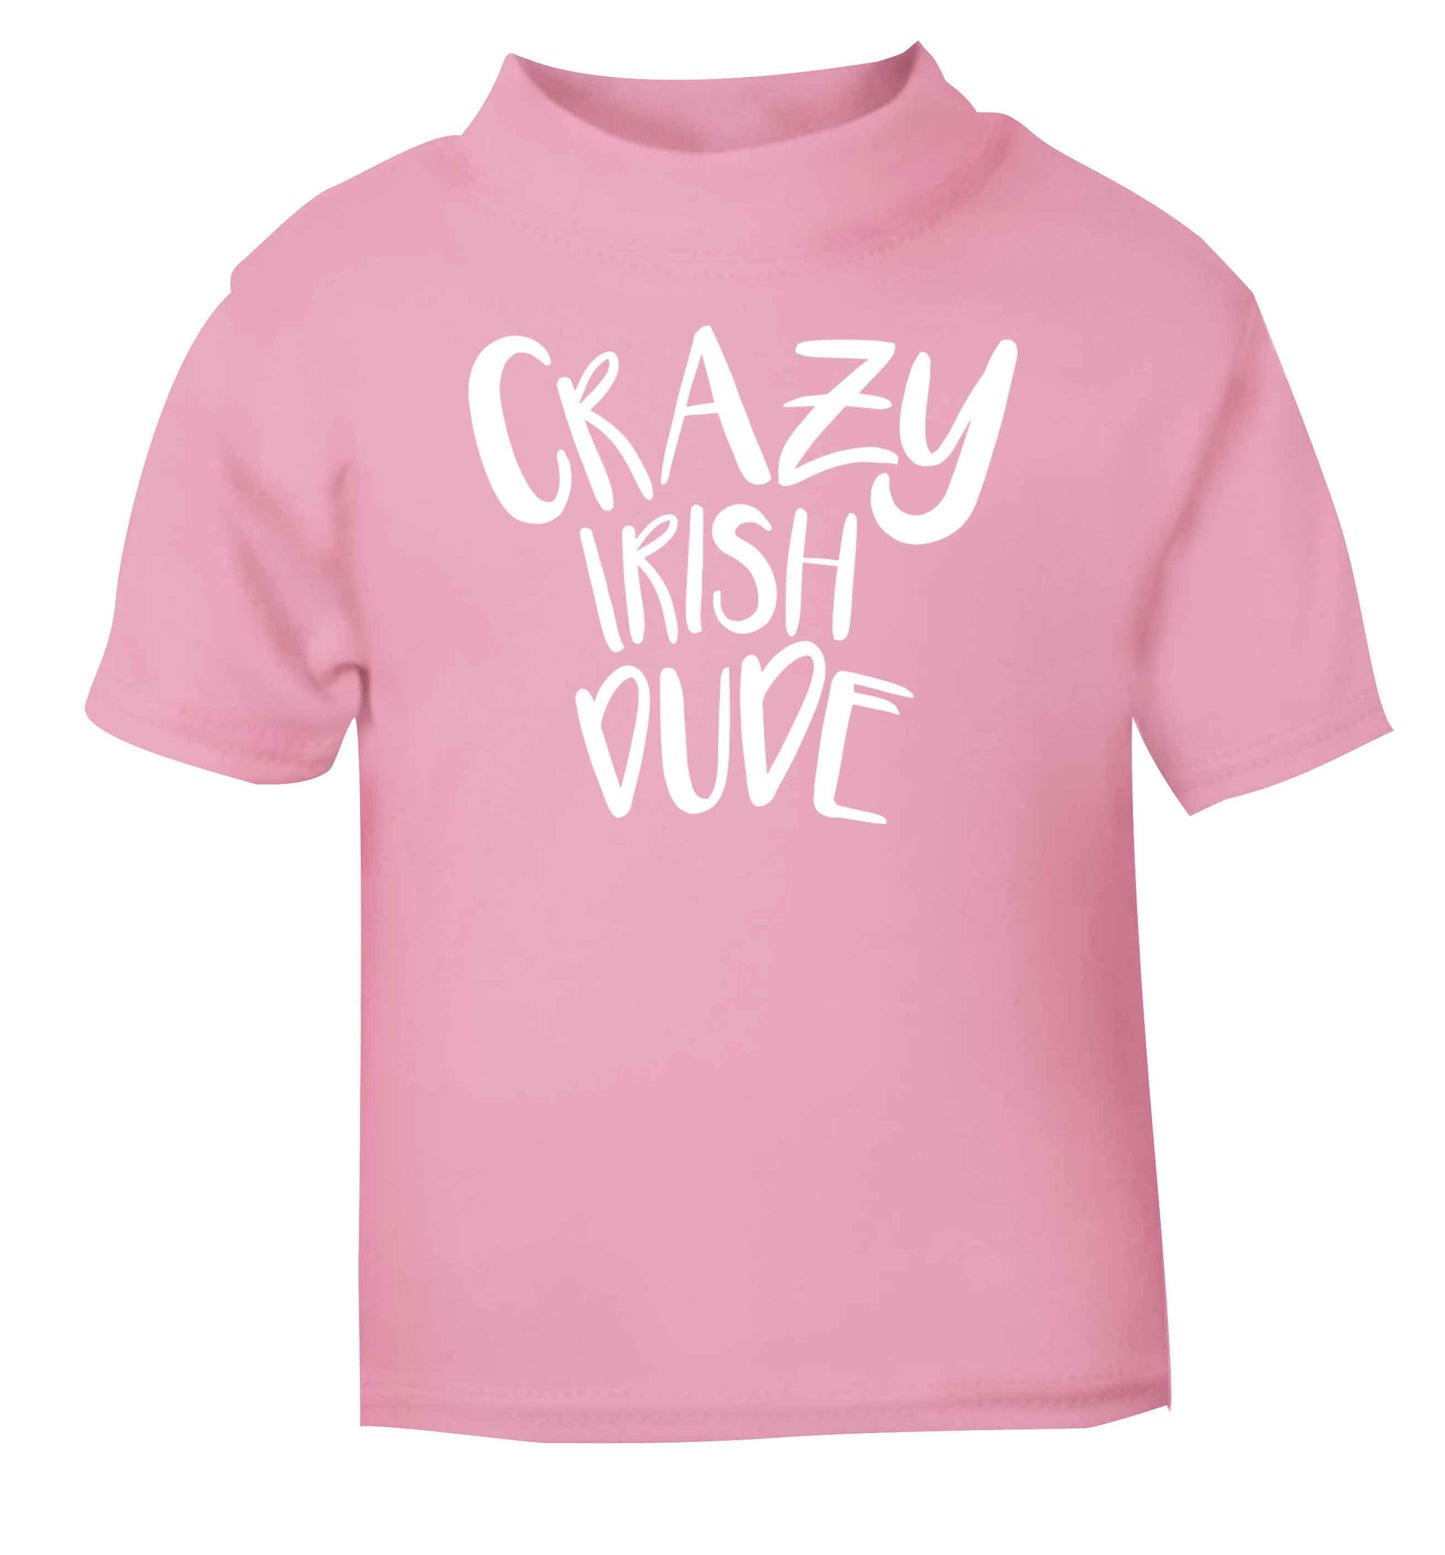 Crazy Irish dude light pink baby toddler Tshirt 2 Years